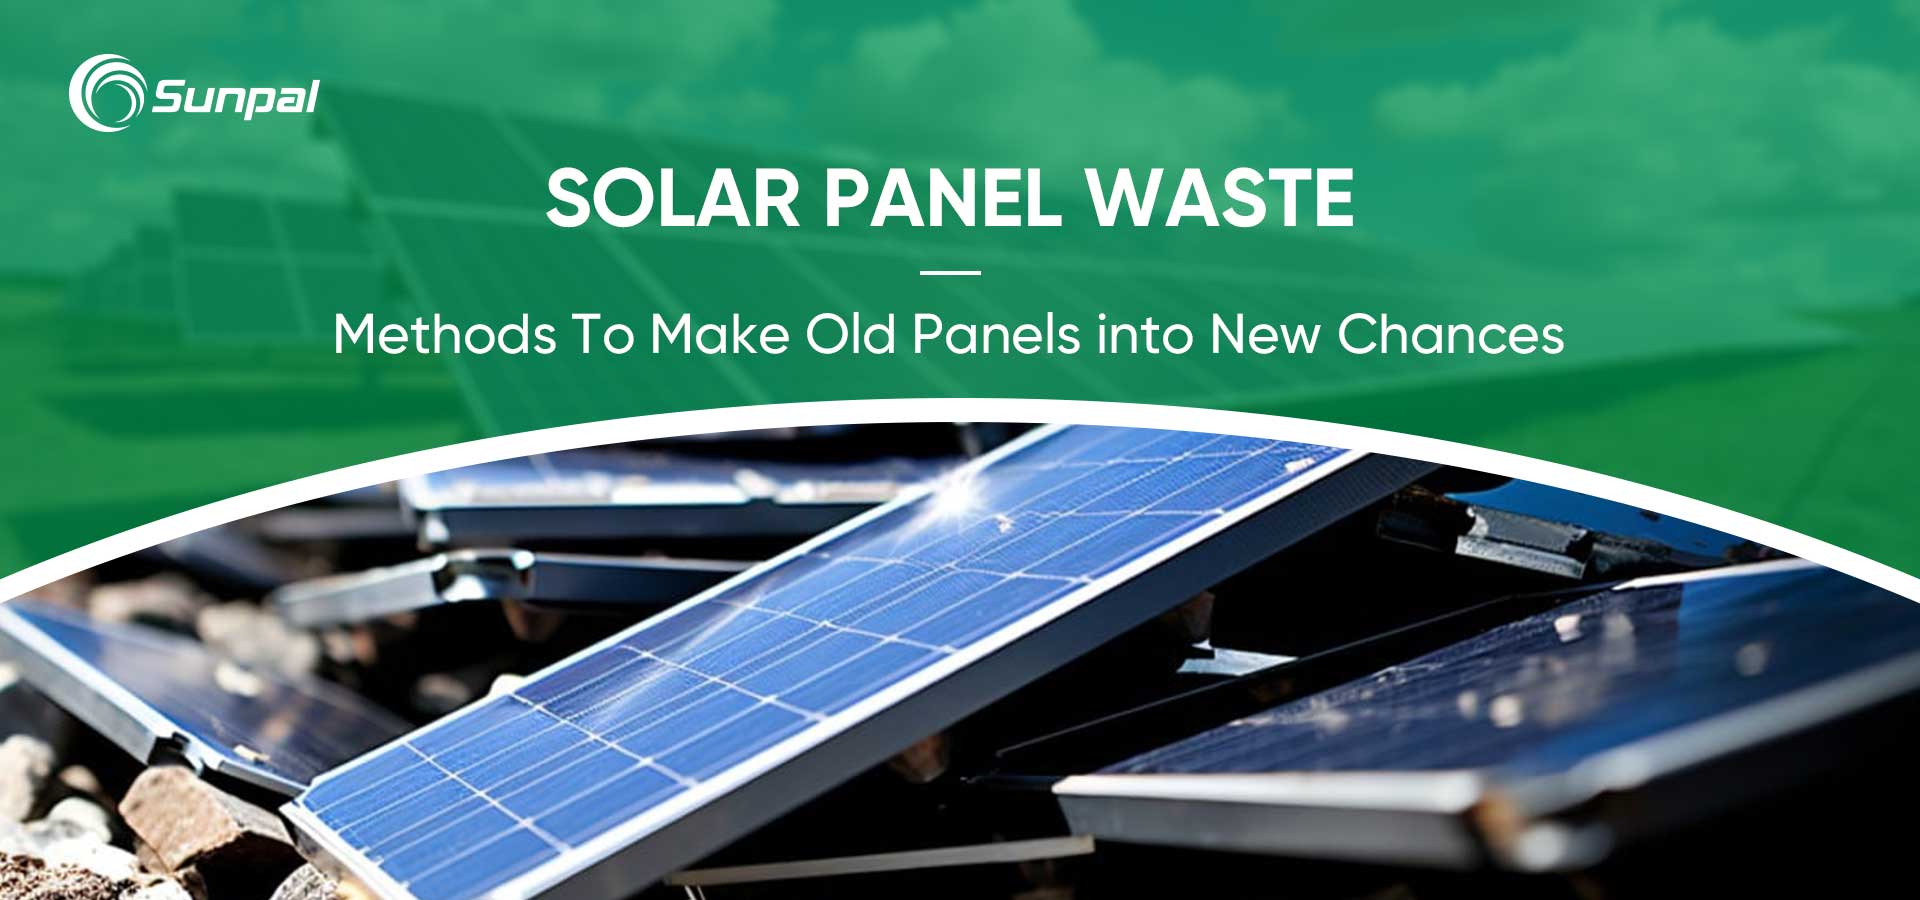 Reciclagem de resíduos de painéis solares: transformando painéis antigos em novas oportunidades